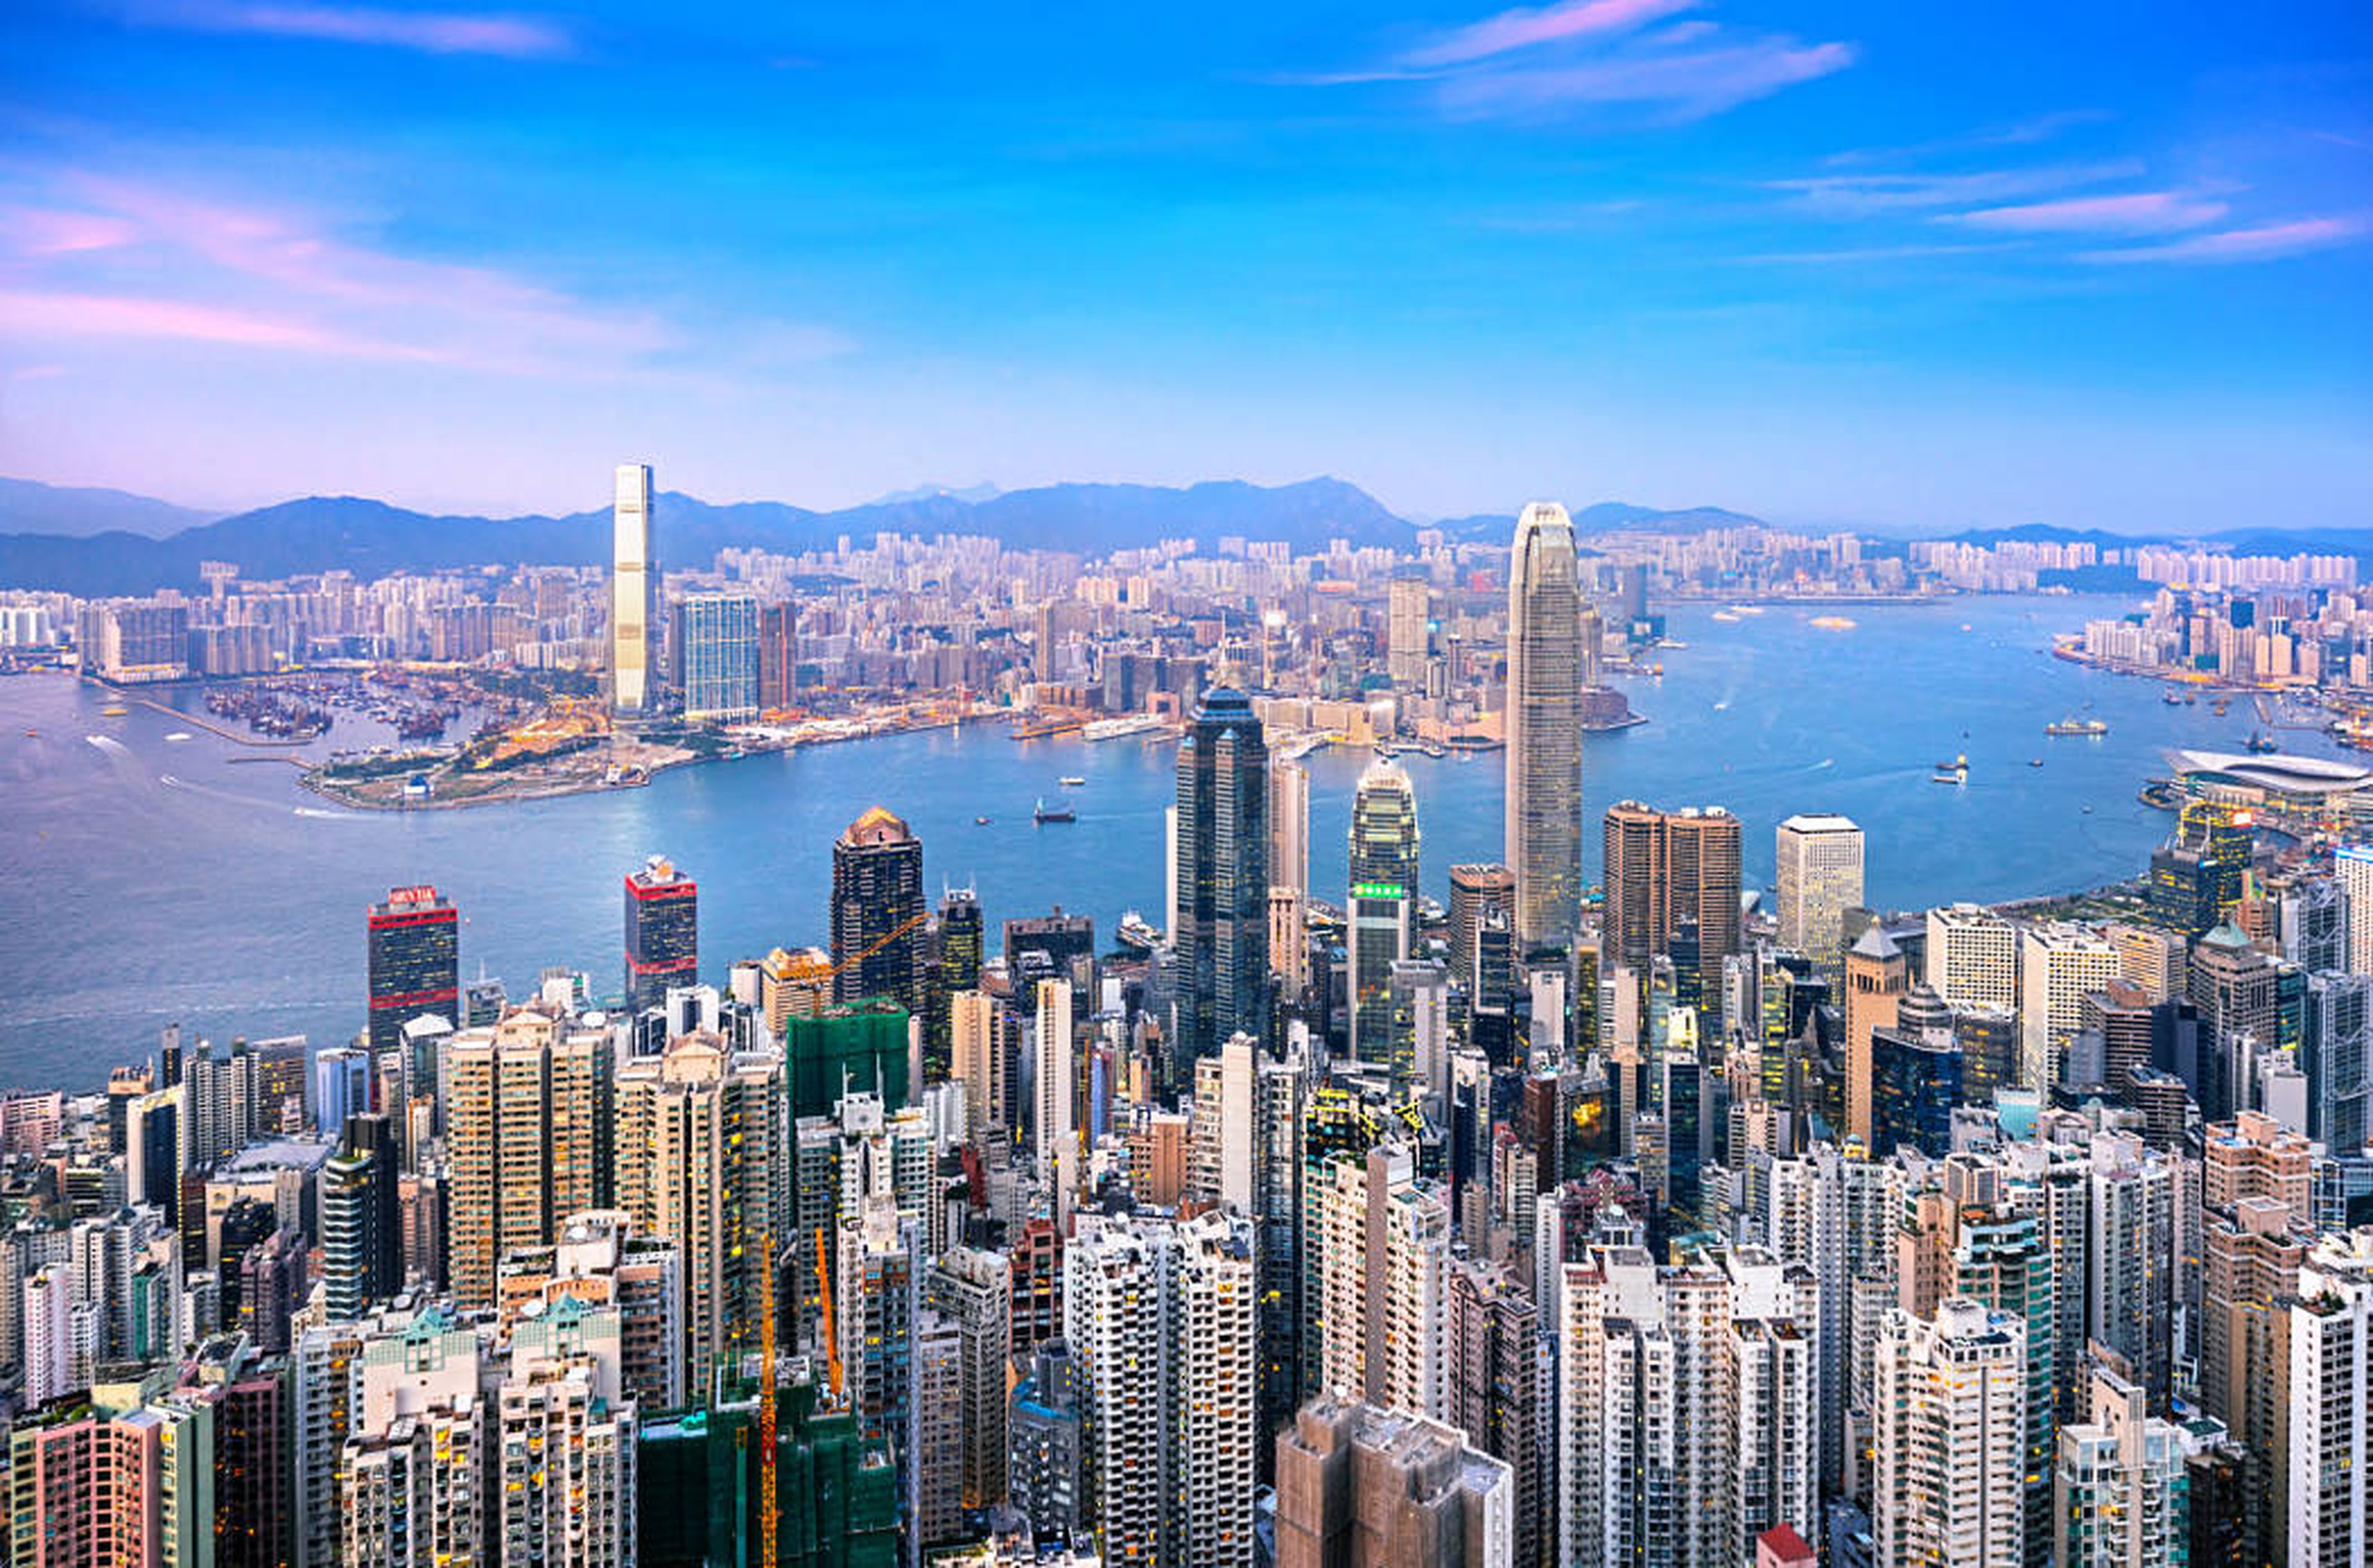 Vista del skyline de Hong Kong